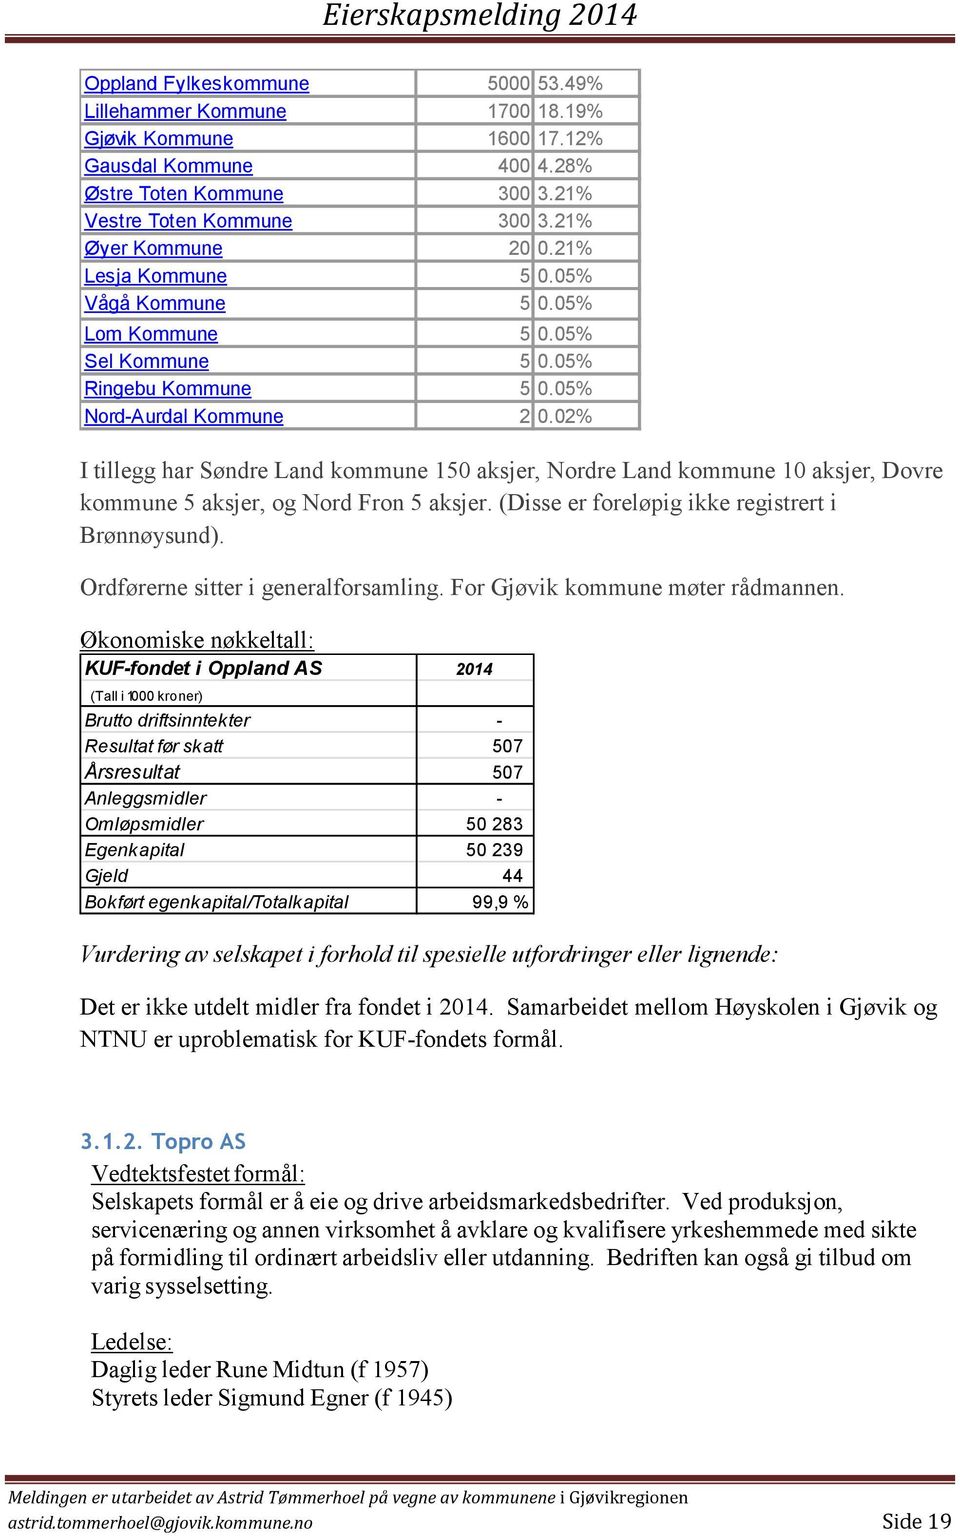 02% I tillegg har Søndre Land kommune 150 aksjer, Nordre Land kommune 10 aksjer, Dovre kommune 5 aksjer, og Nord Fron 5 aksjer. (Disse er foreløpig ikke registrert i Brønnøysund).